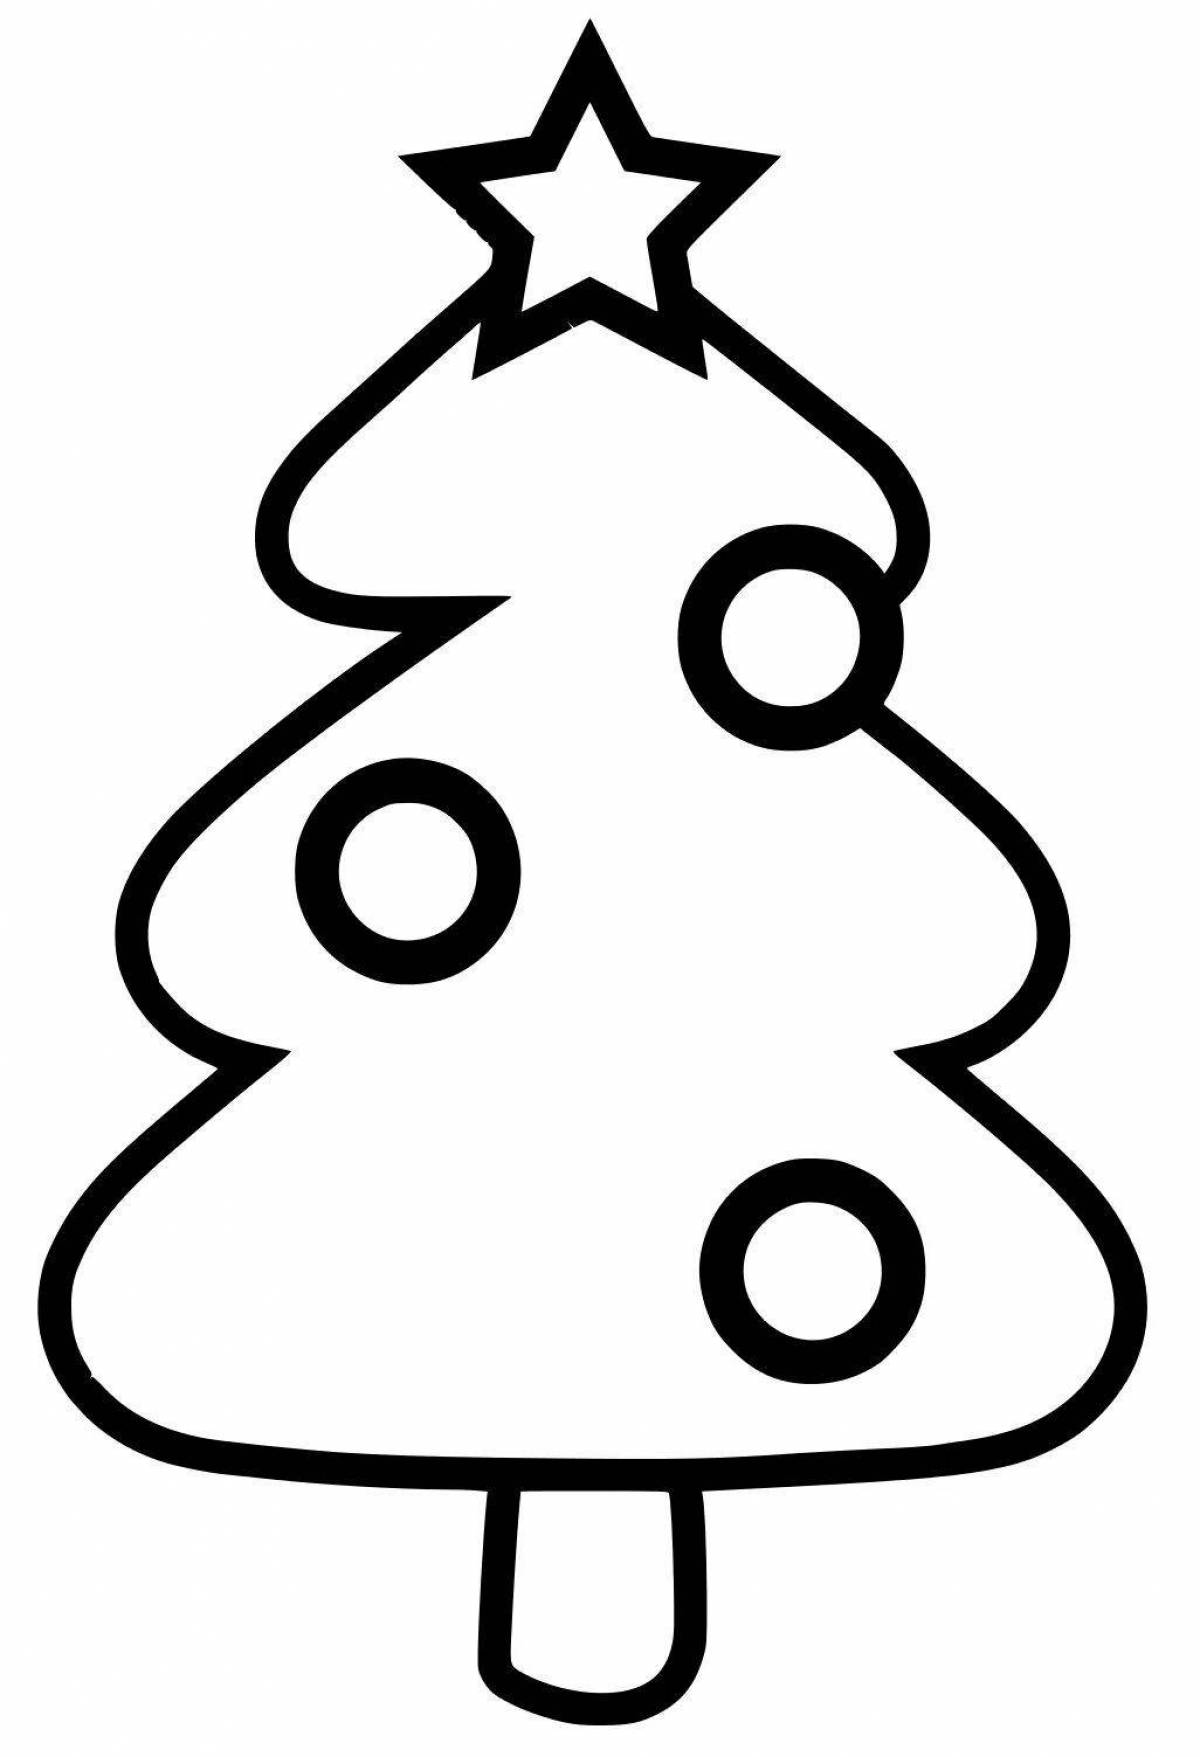 Christmas tree with balls